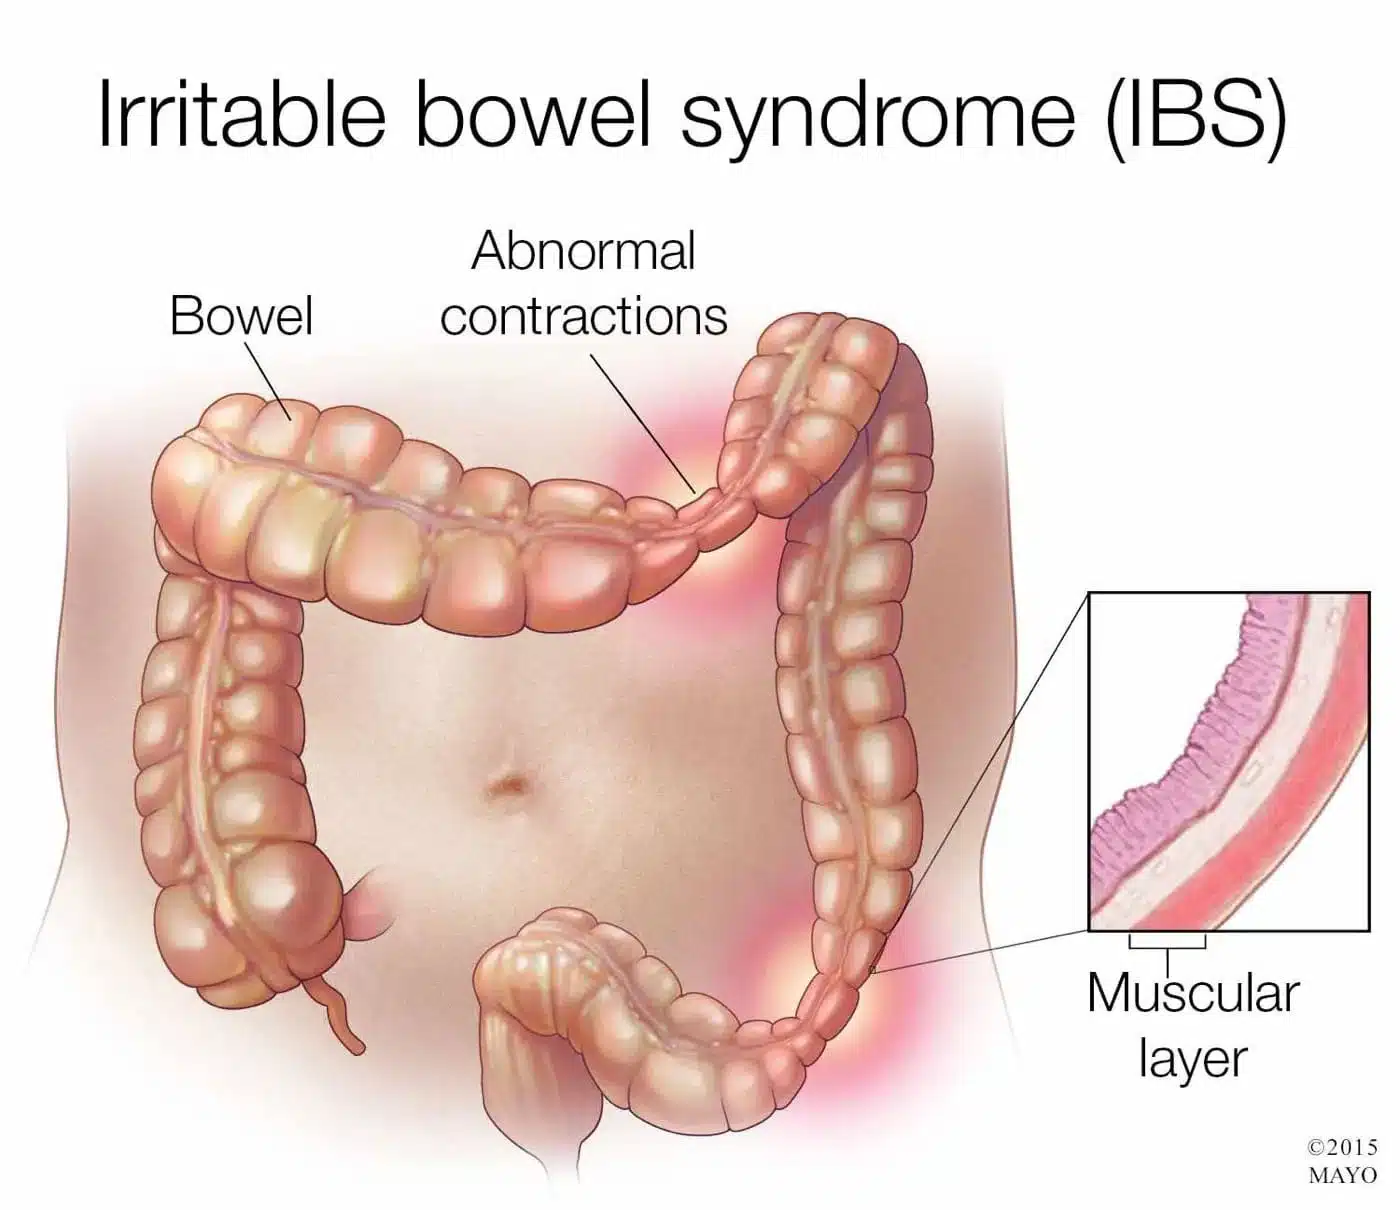 Hội chứng ruột kích thích (IBS) nguyên nhân gây ăn xong bị đau bụng đi ngoài